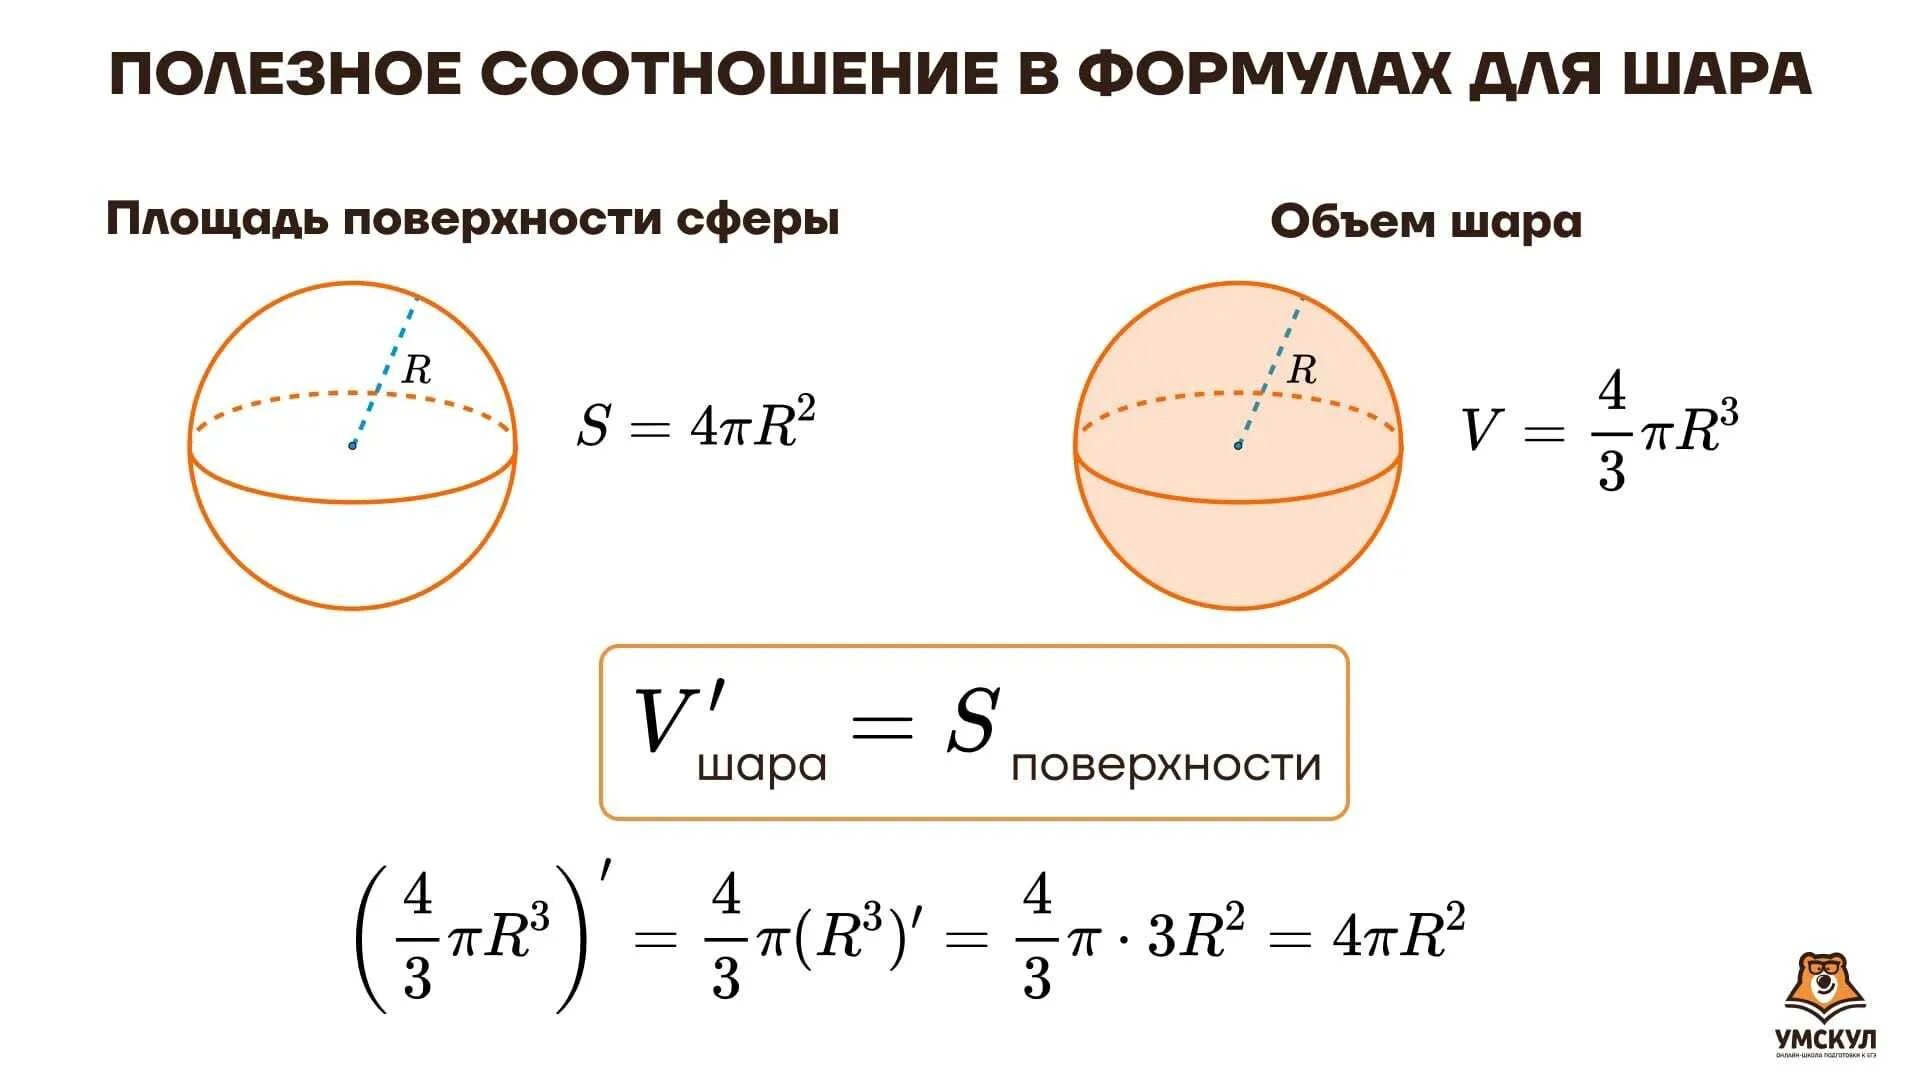 D шара формула. Площадь поверхности шара формула. Площадь поверхности шара формула через радиус. Формулы шара и сферы. Объем и площадь поверхности шара.